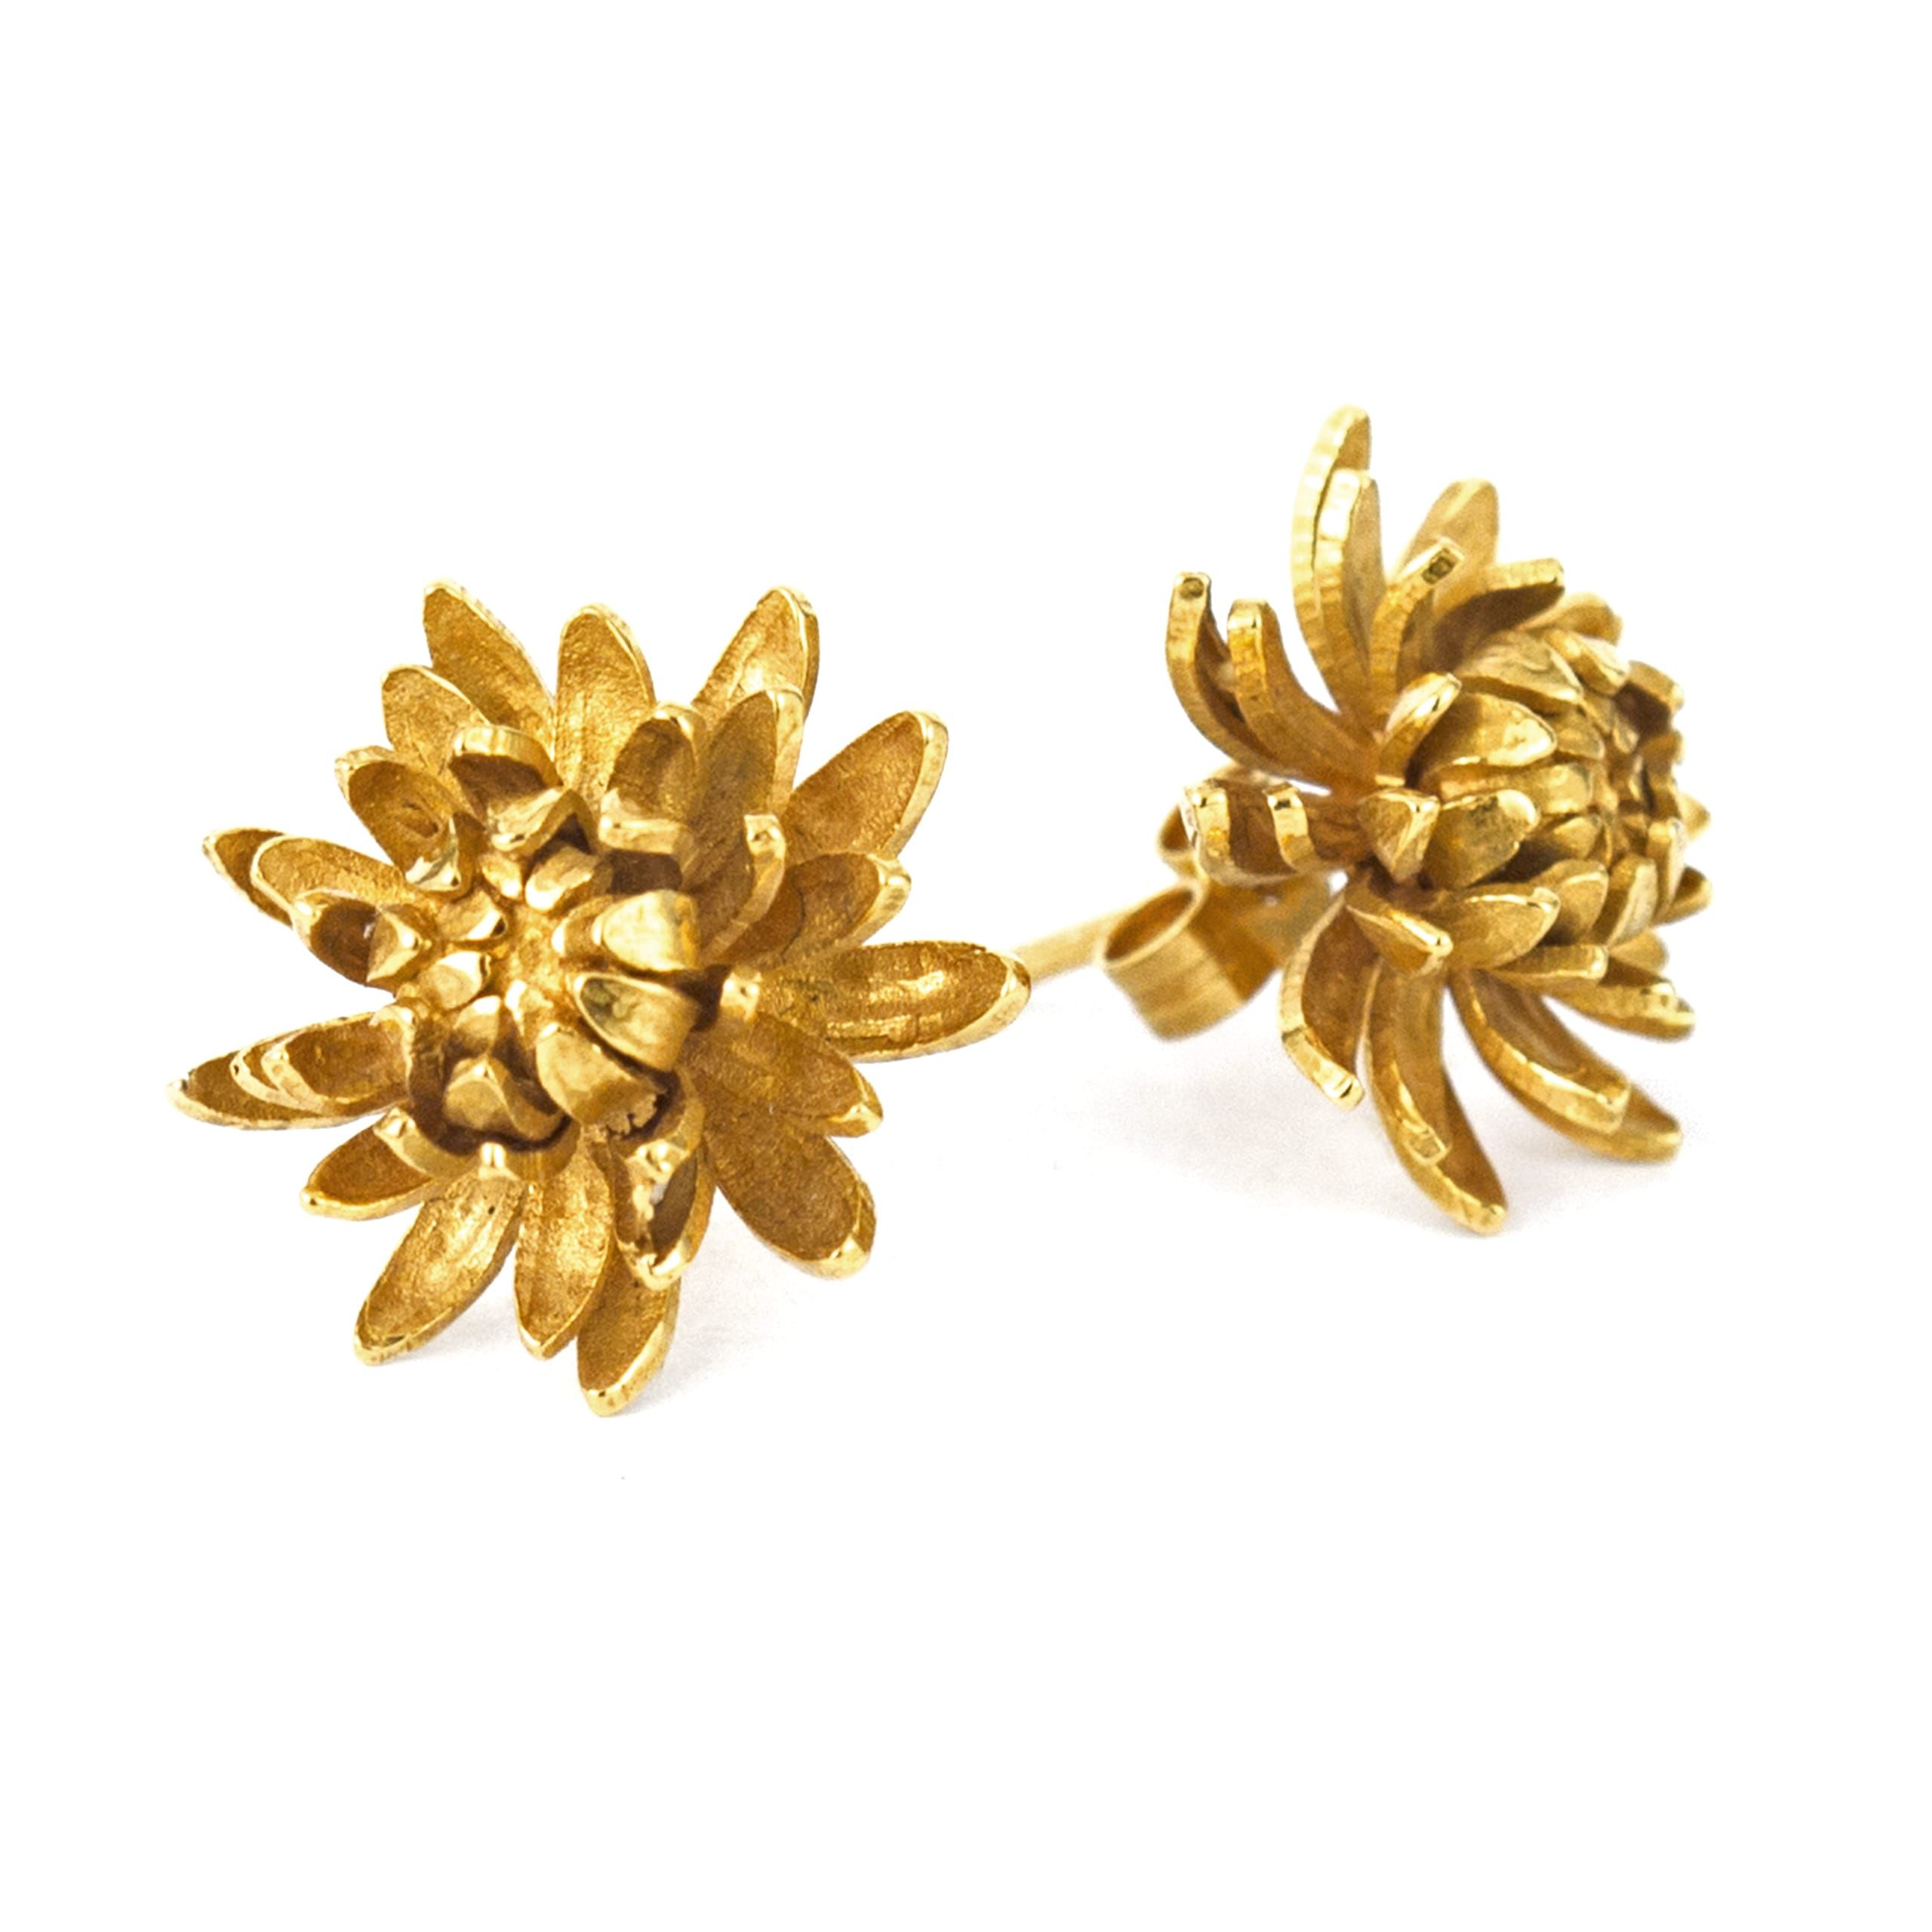 Byzy flowers earrings